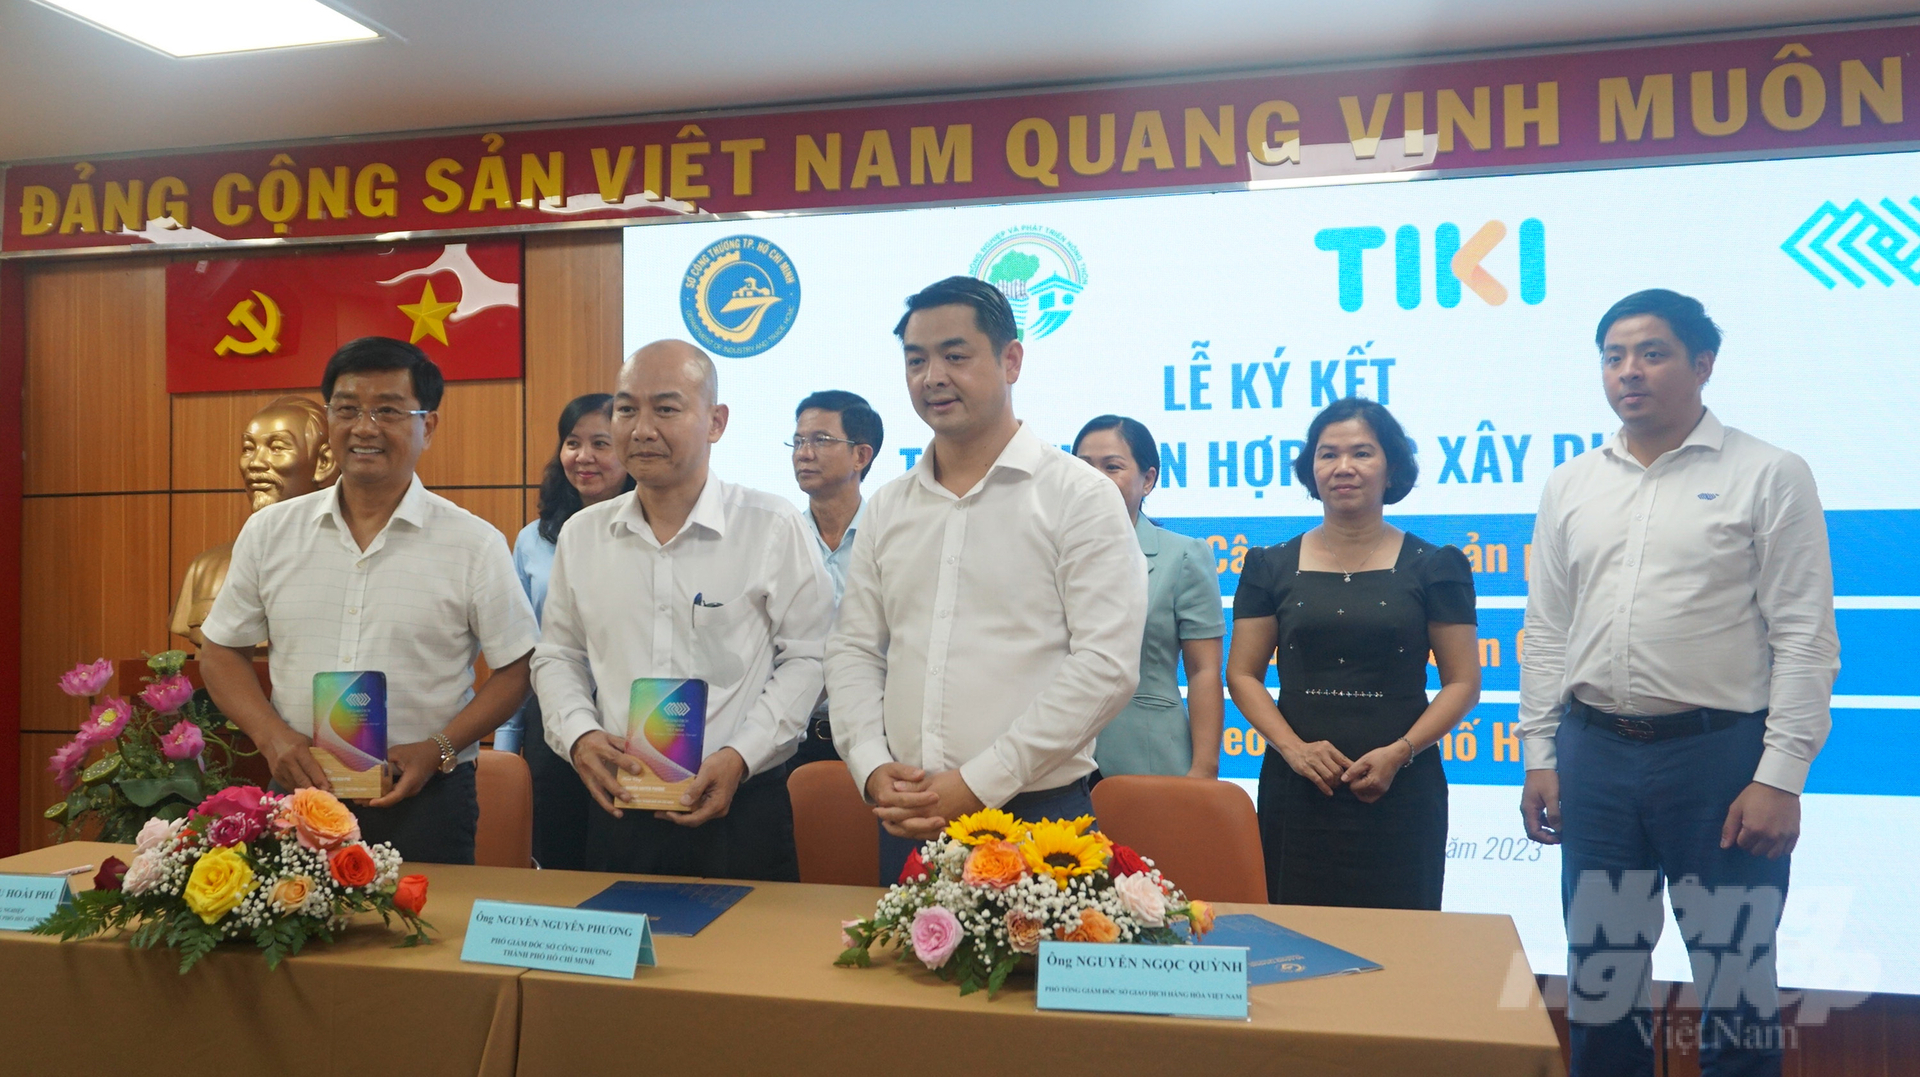 Lễ ký kết hợp tác xây dựng sàn giao dịch thịt heo TP.HCM. Ảnh: Nguyễn Thủy.